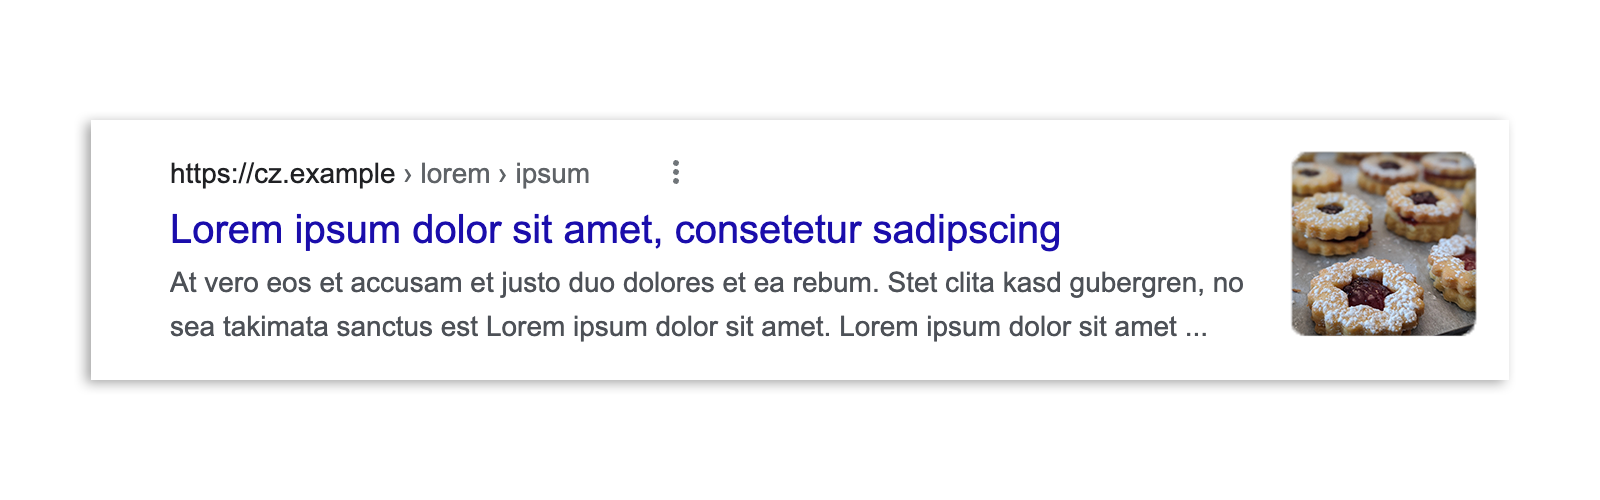 Résultat de recherche Google en Tchéquie avant l'entrée en vigueur de la loi, qui affiche un extrait de l'article, un aperçu d'image, le titre et l'URL.